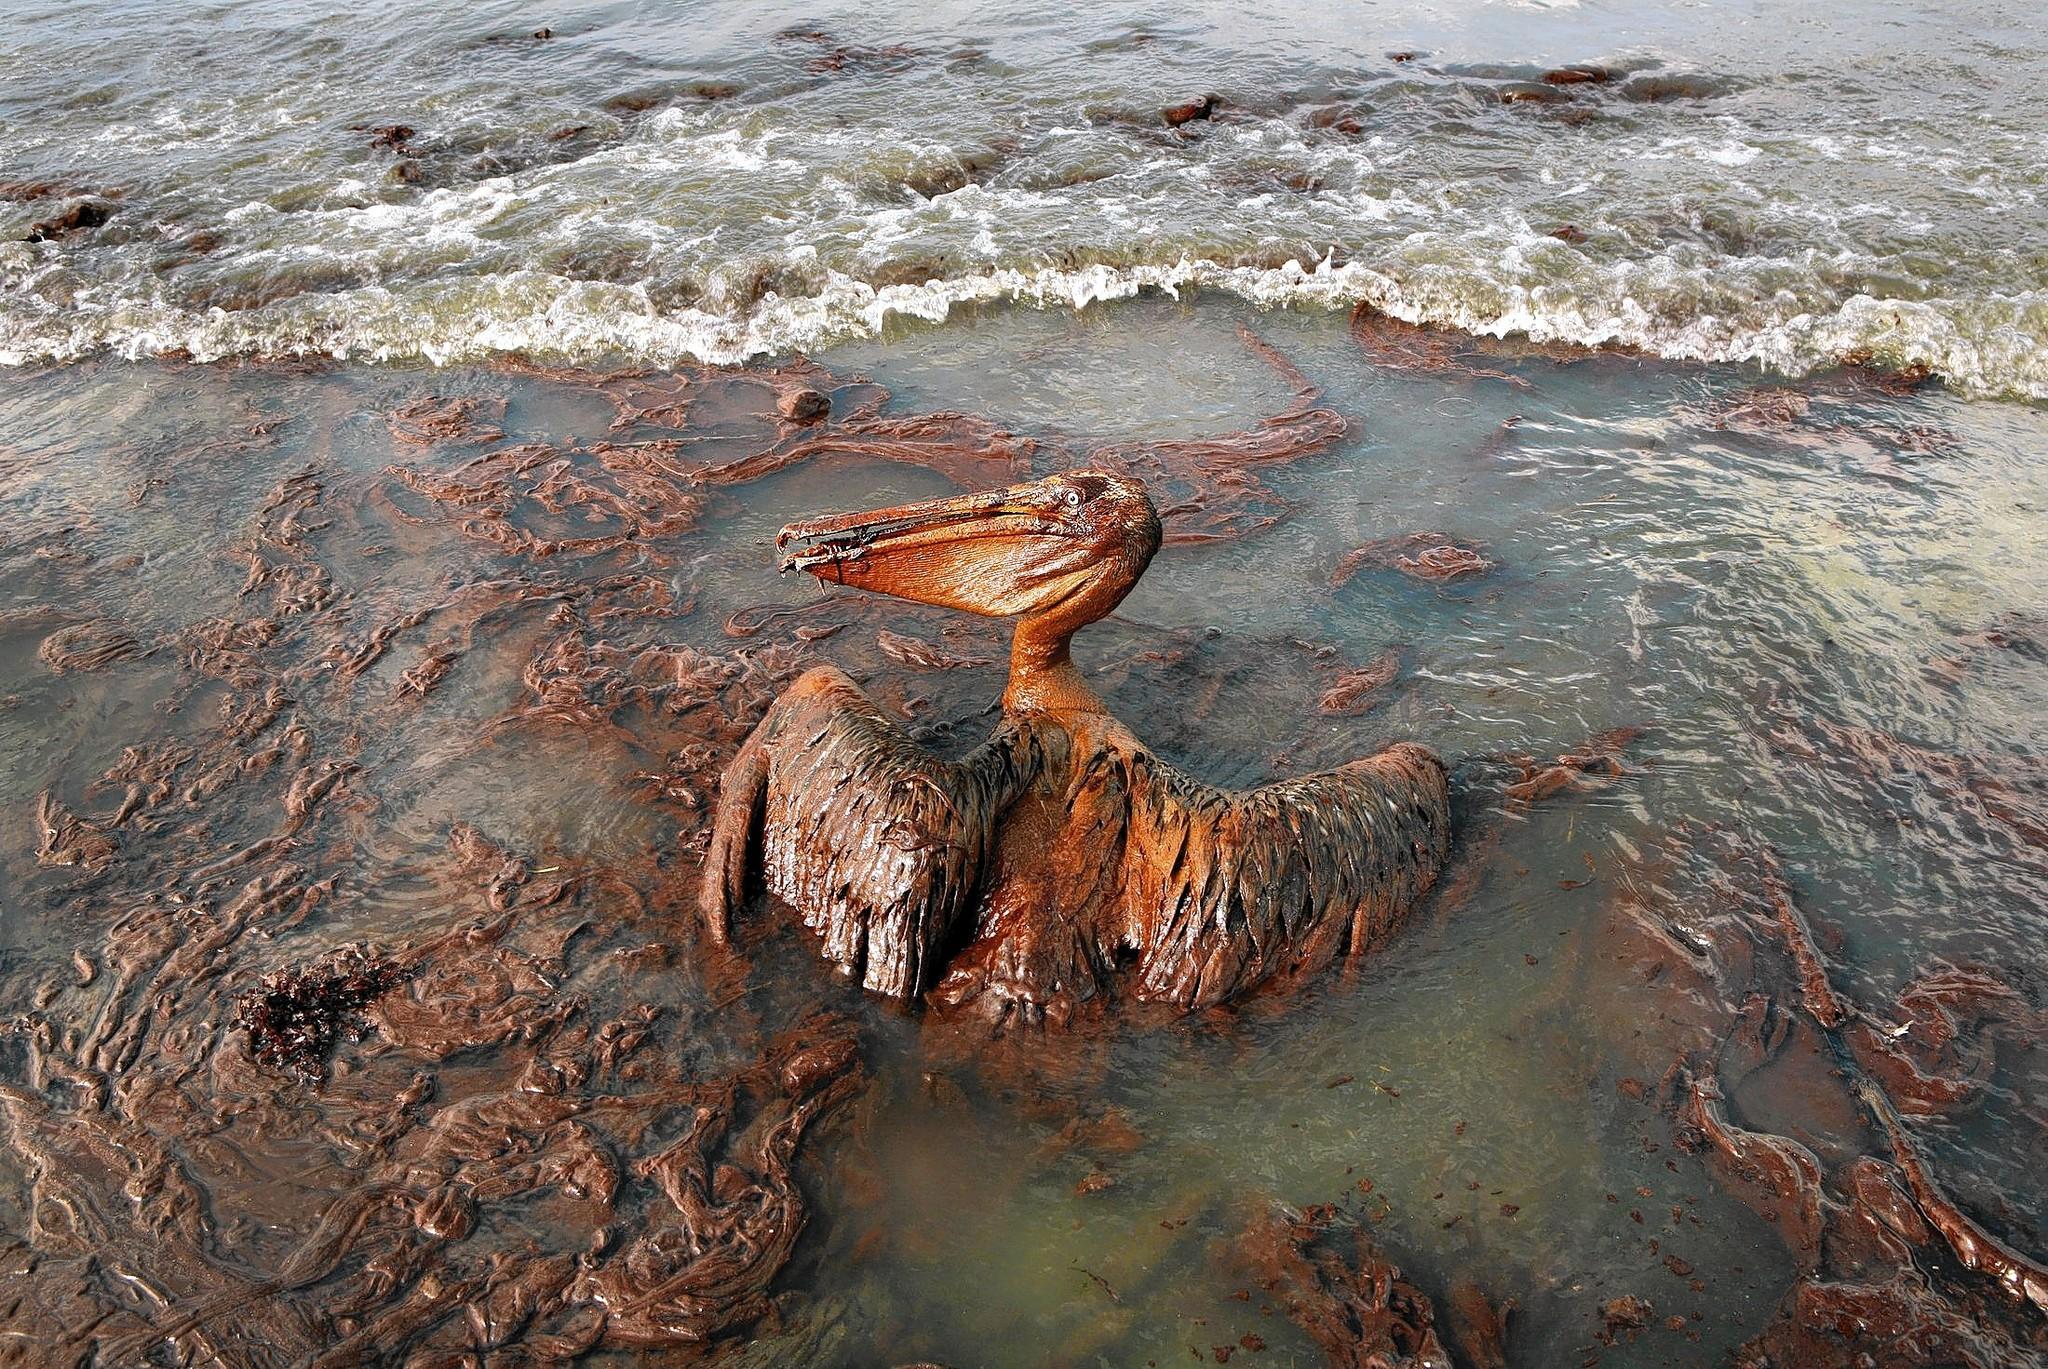 BP Oil Spill 2010